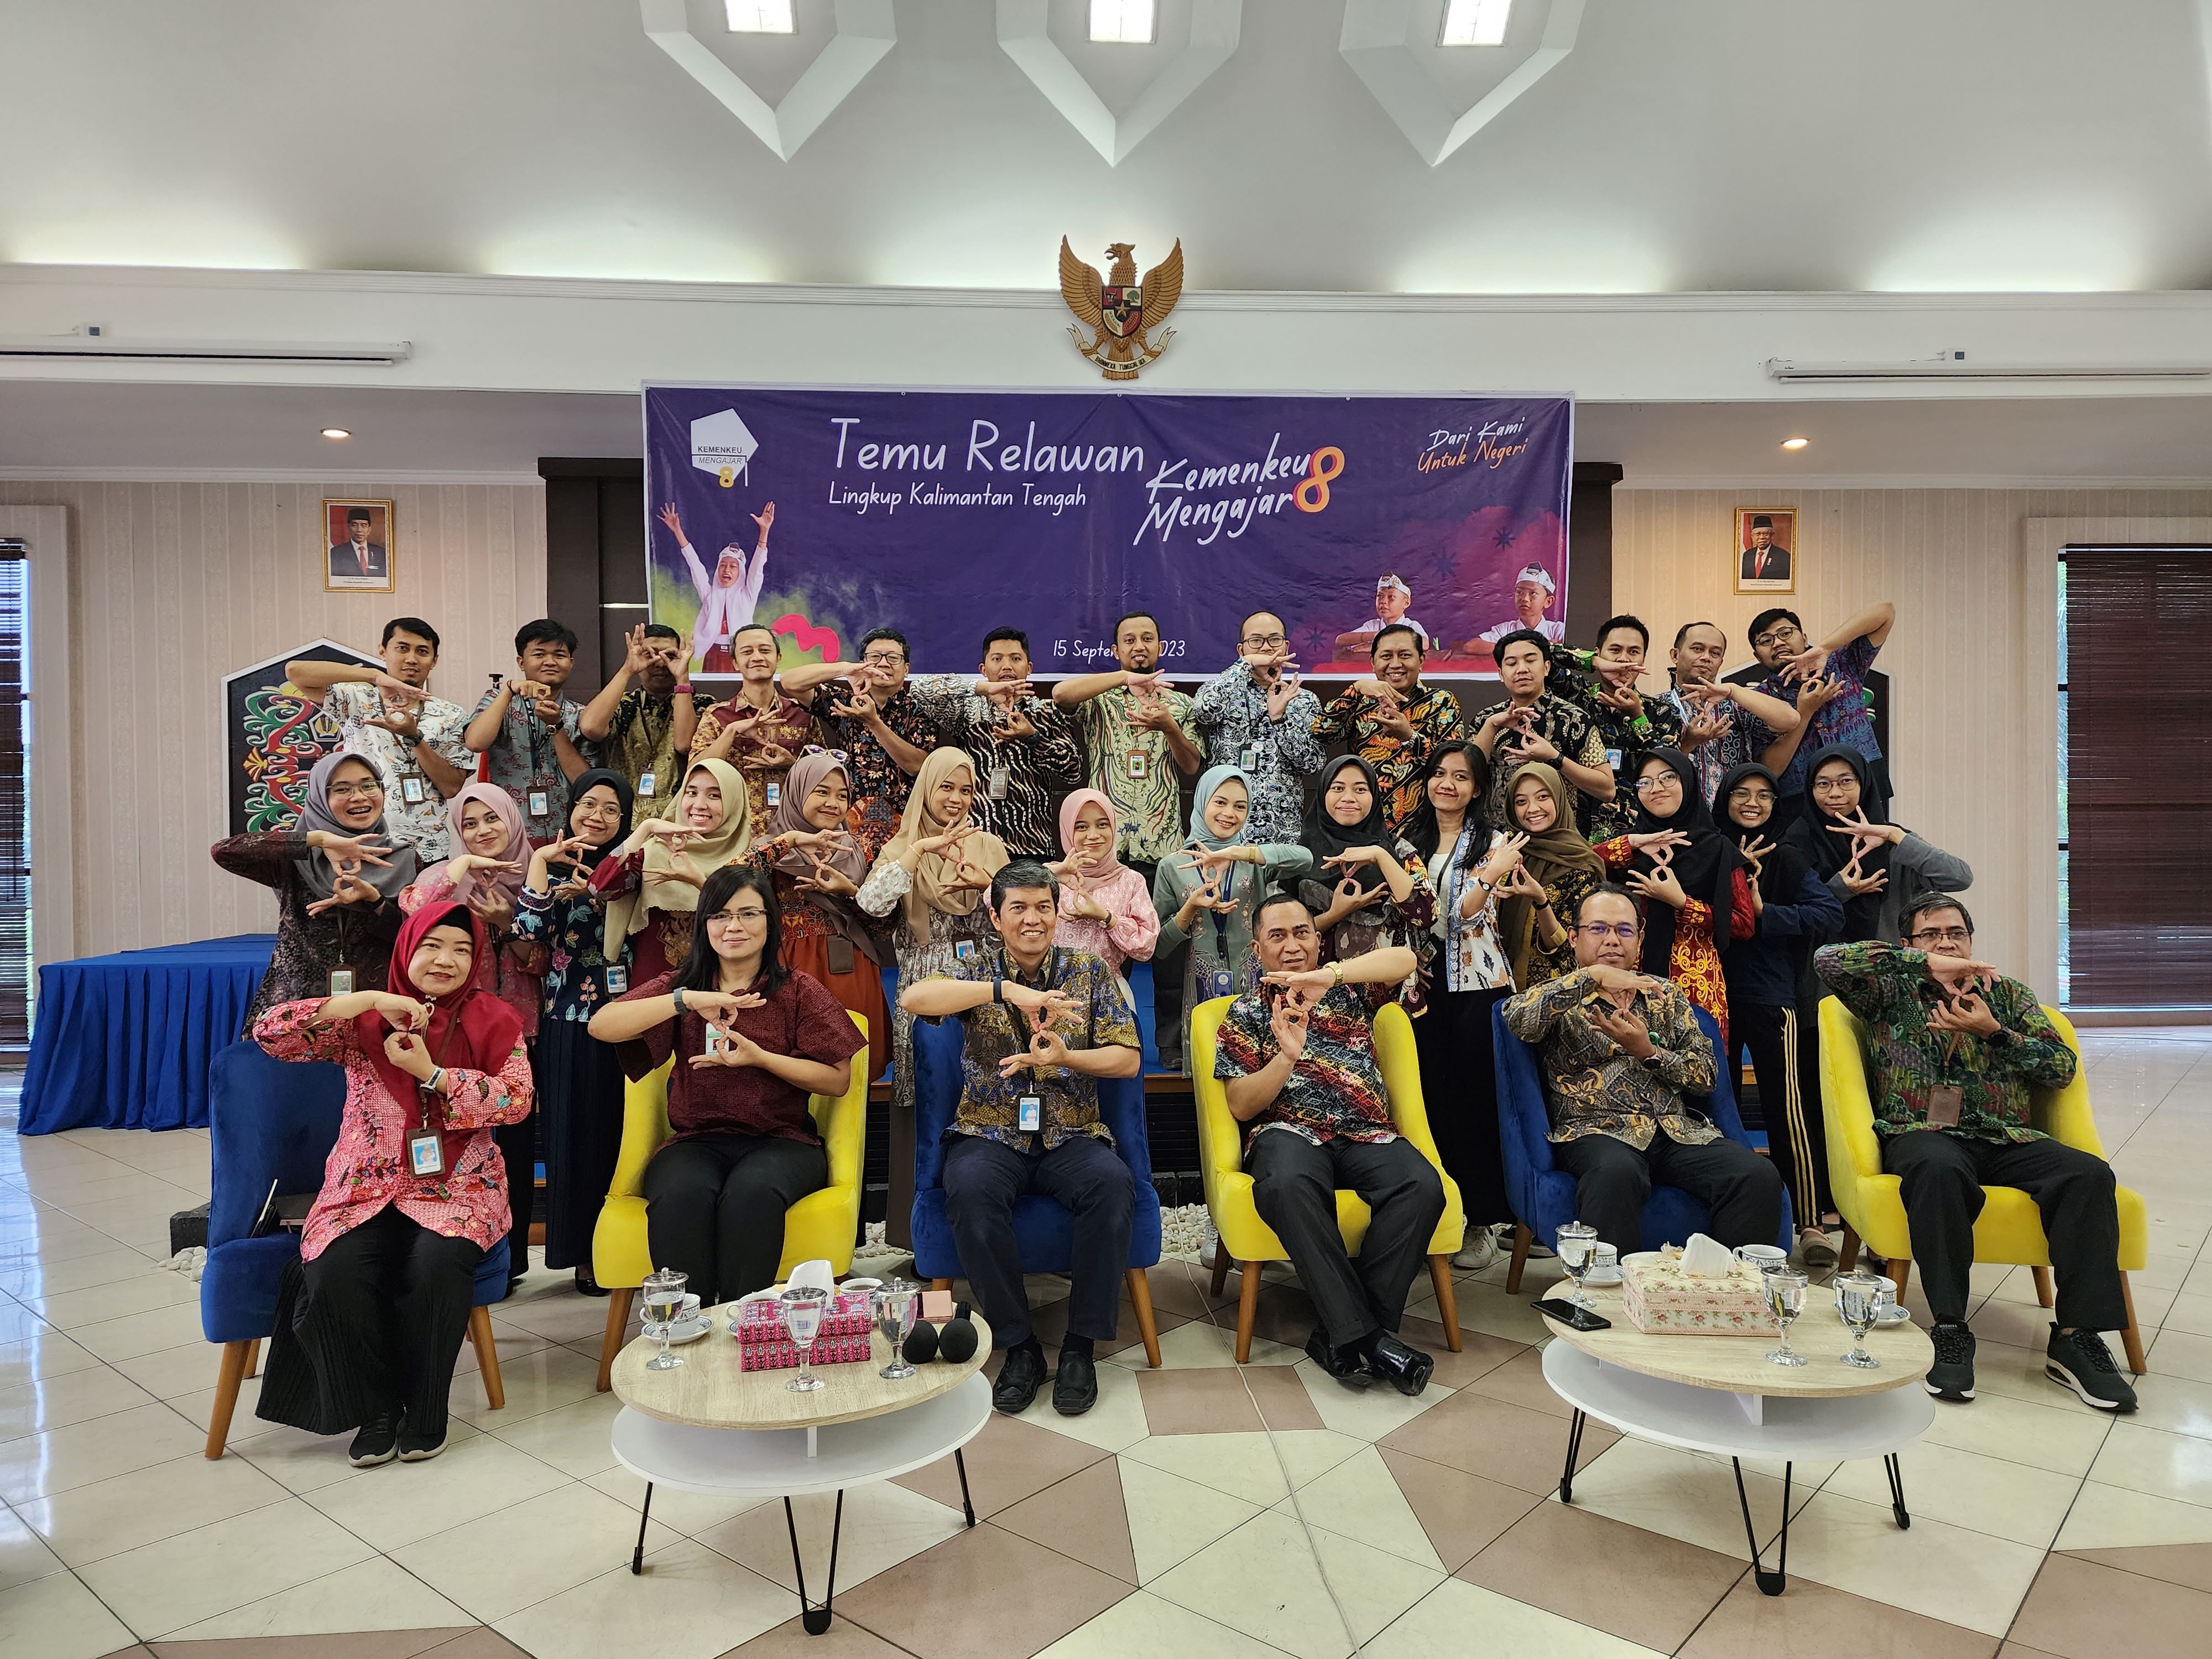 Temu Relawan Kemenkeu Mengajar 8 Lingkup Provinsi Kalimantan Tengah